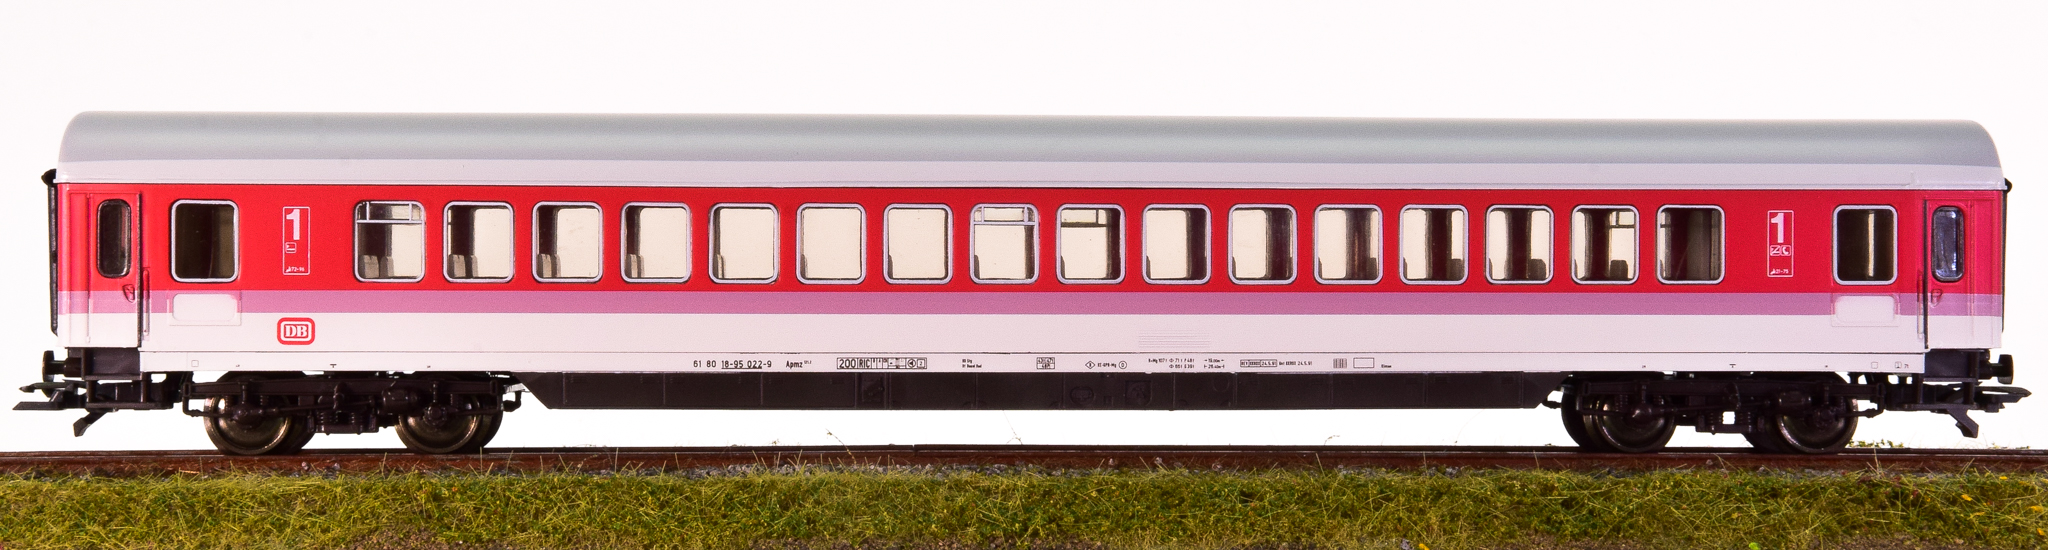 Roco 44781 – 1. Klasse IC-Großraumwagen Apmz der DB